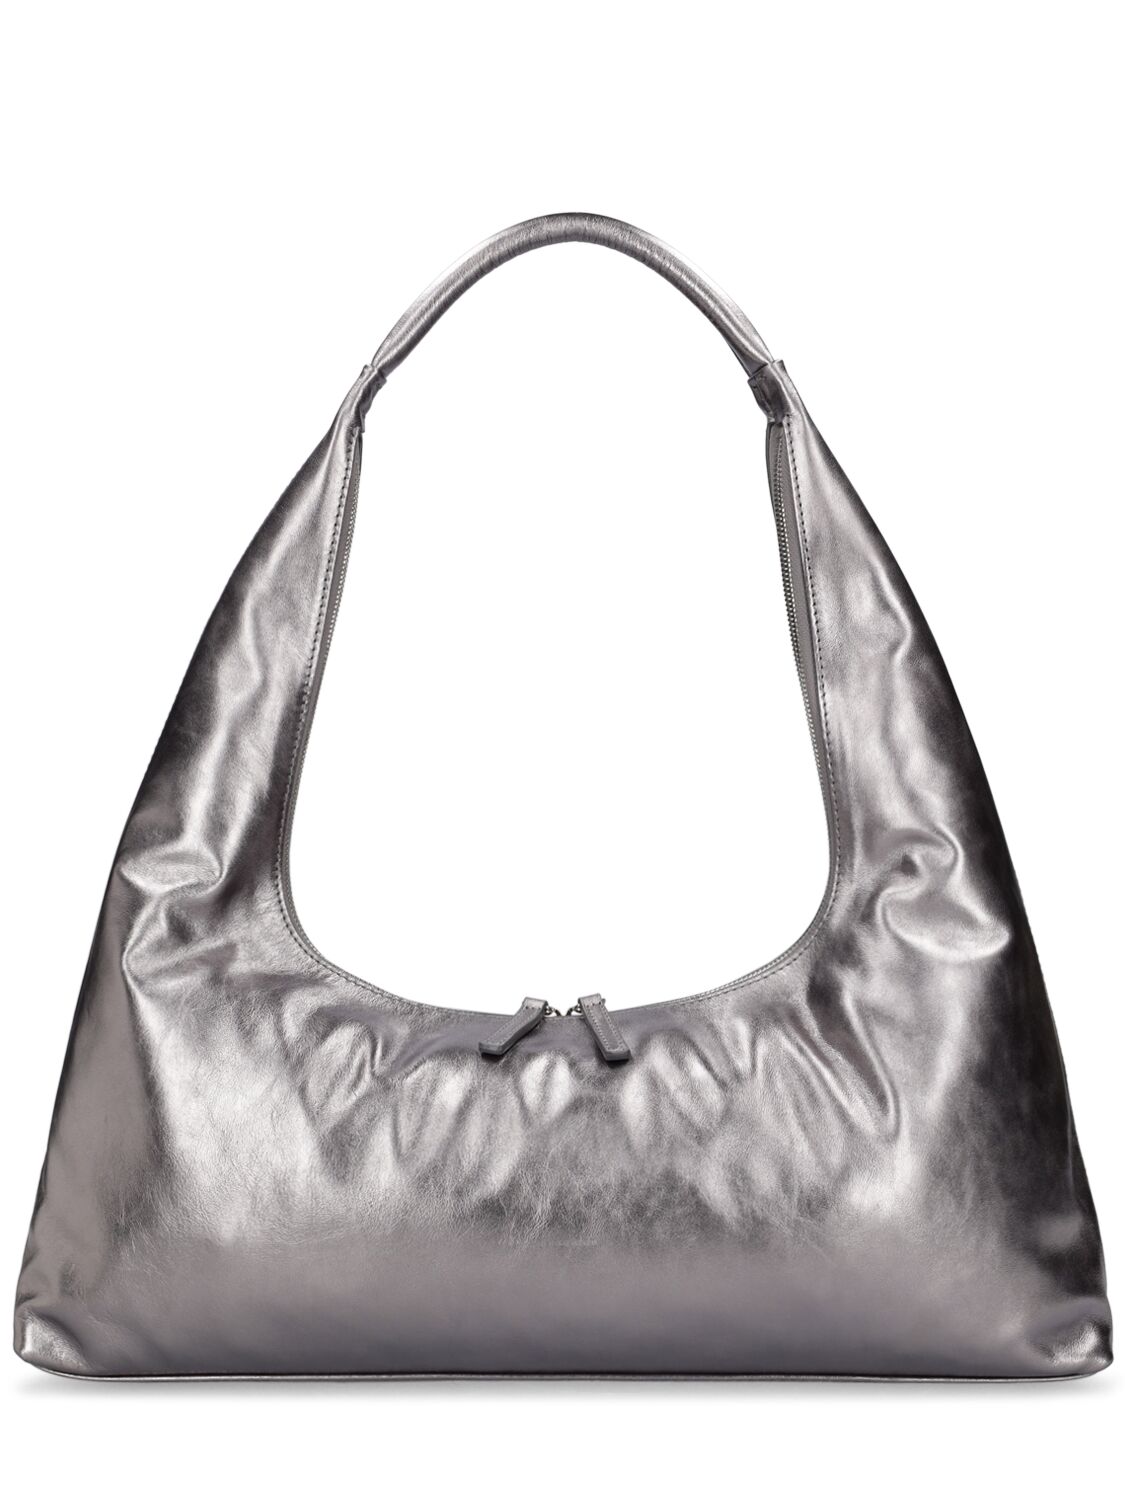 Marge Sherwood Large Hobo Plain Leather Shoulder Bag In Brown